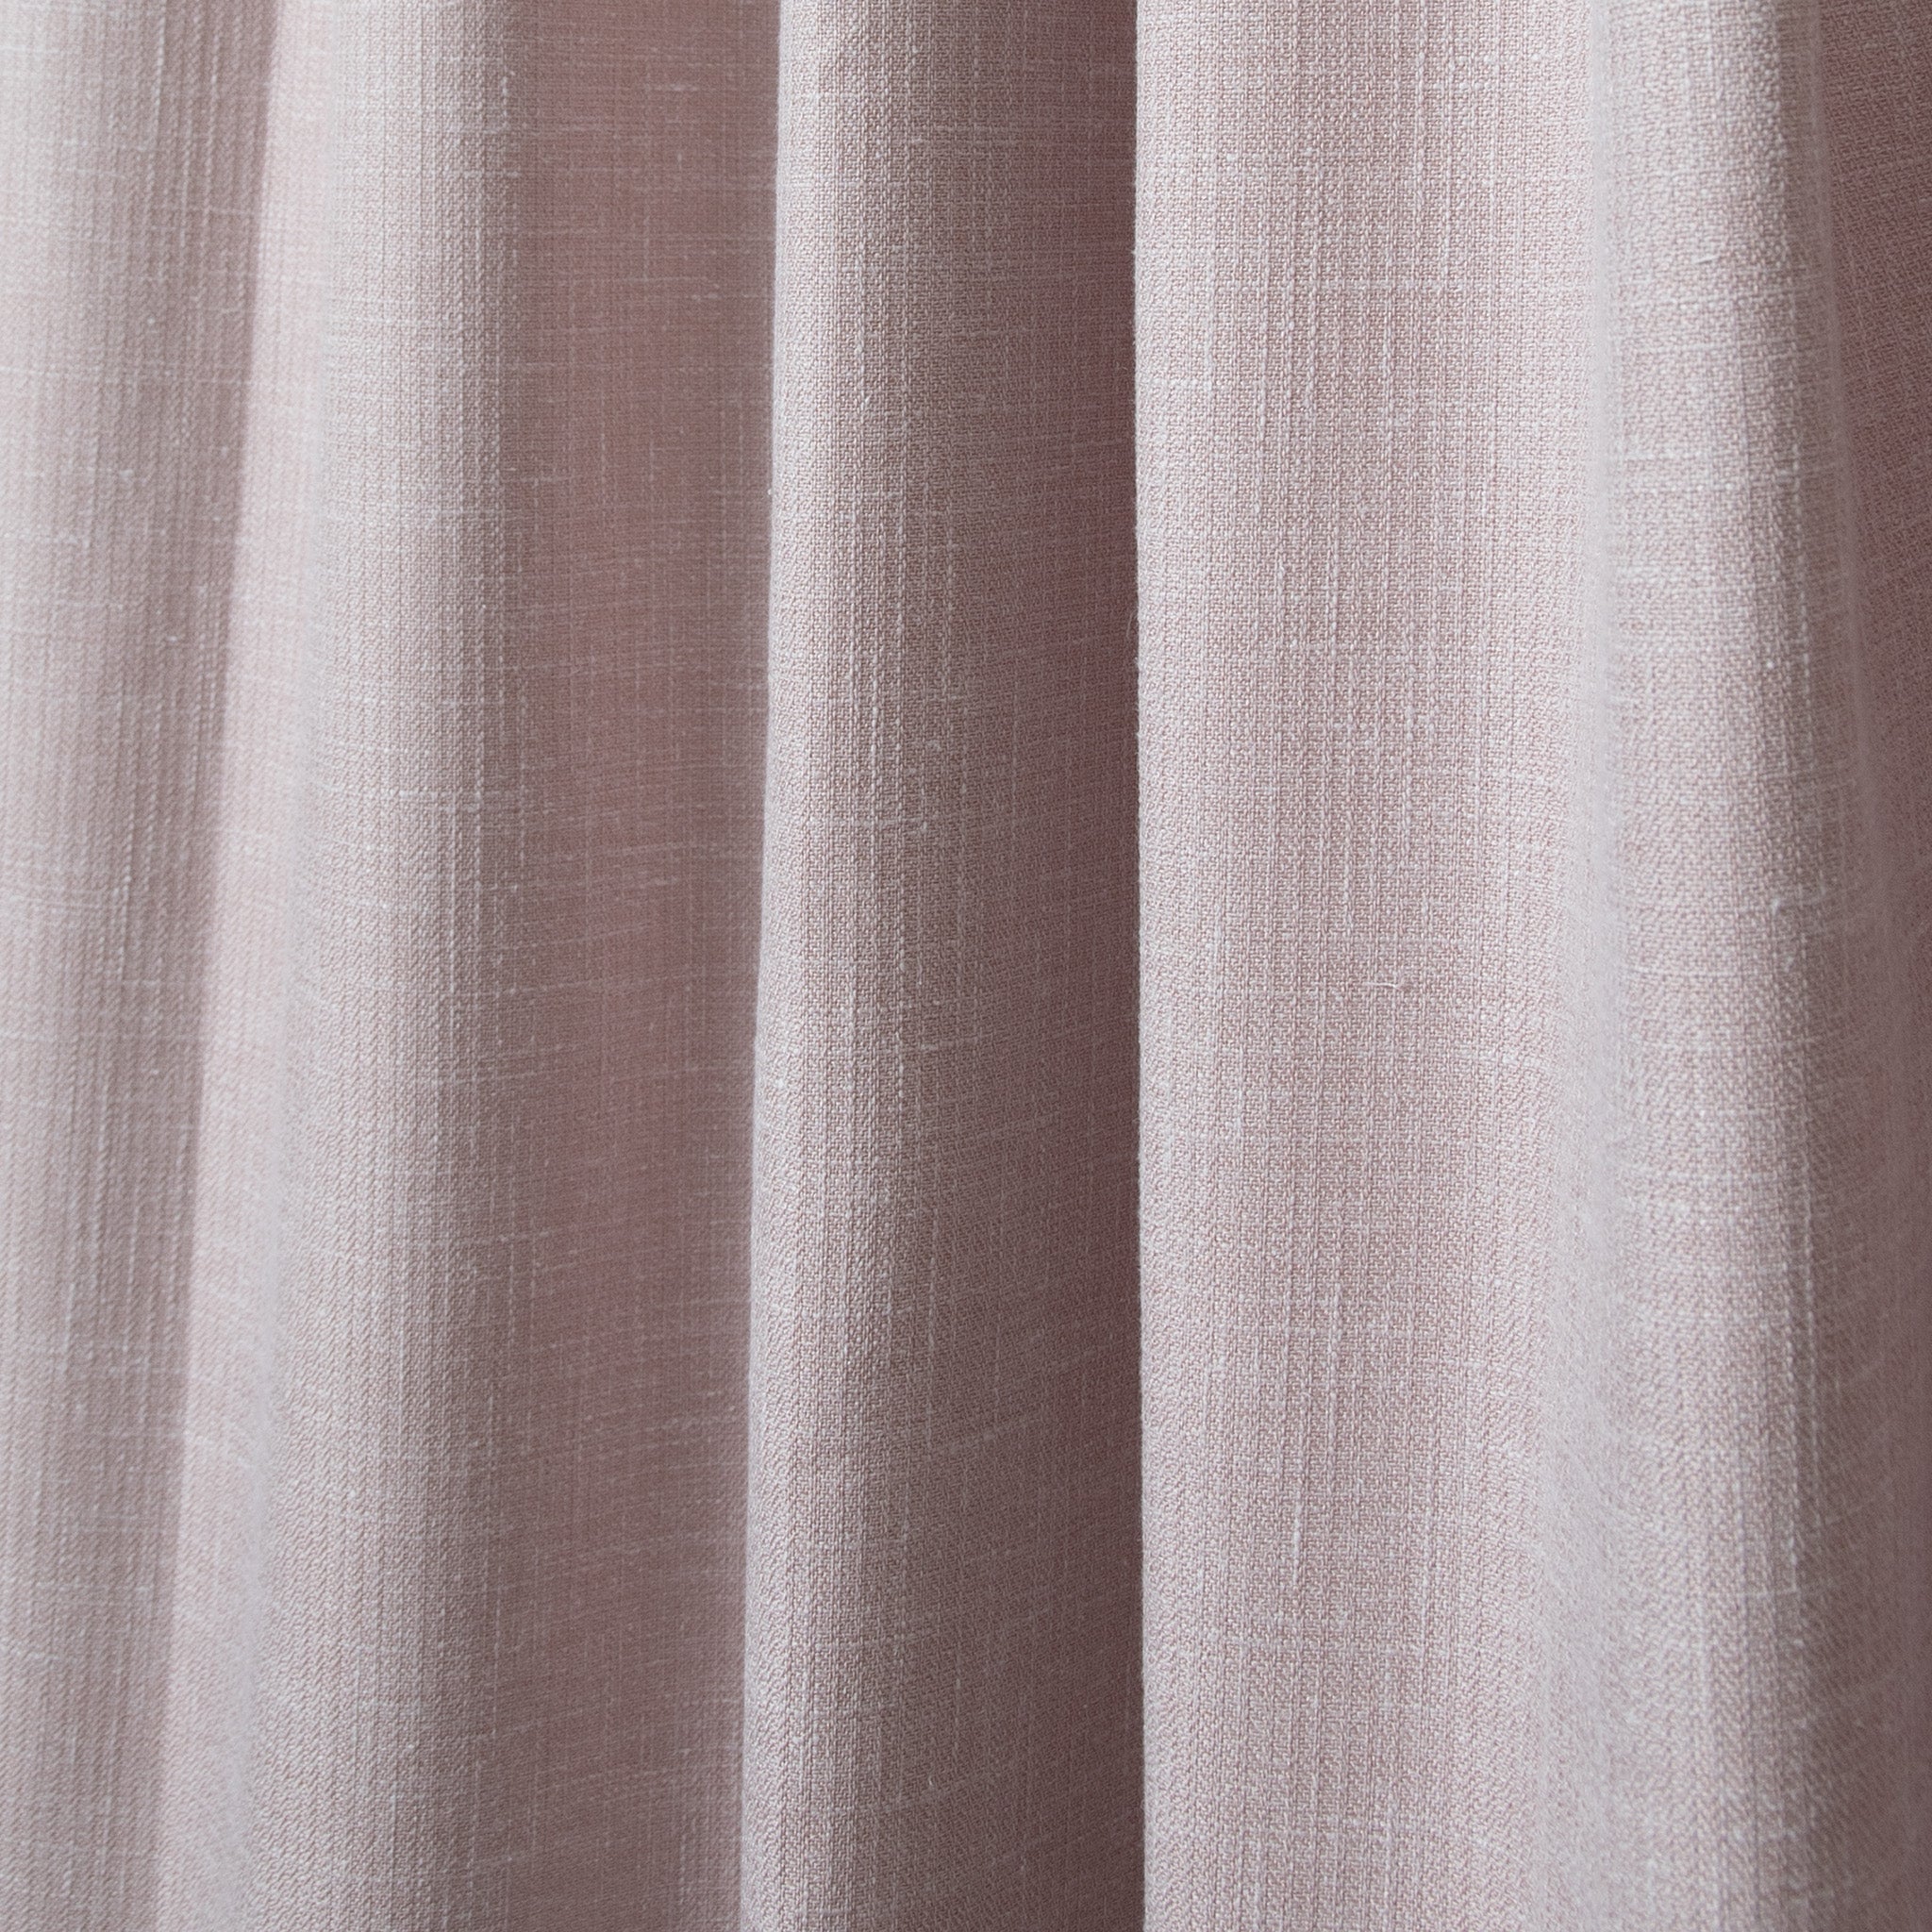 pink curtain close up 